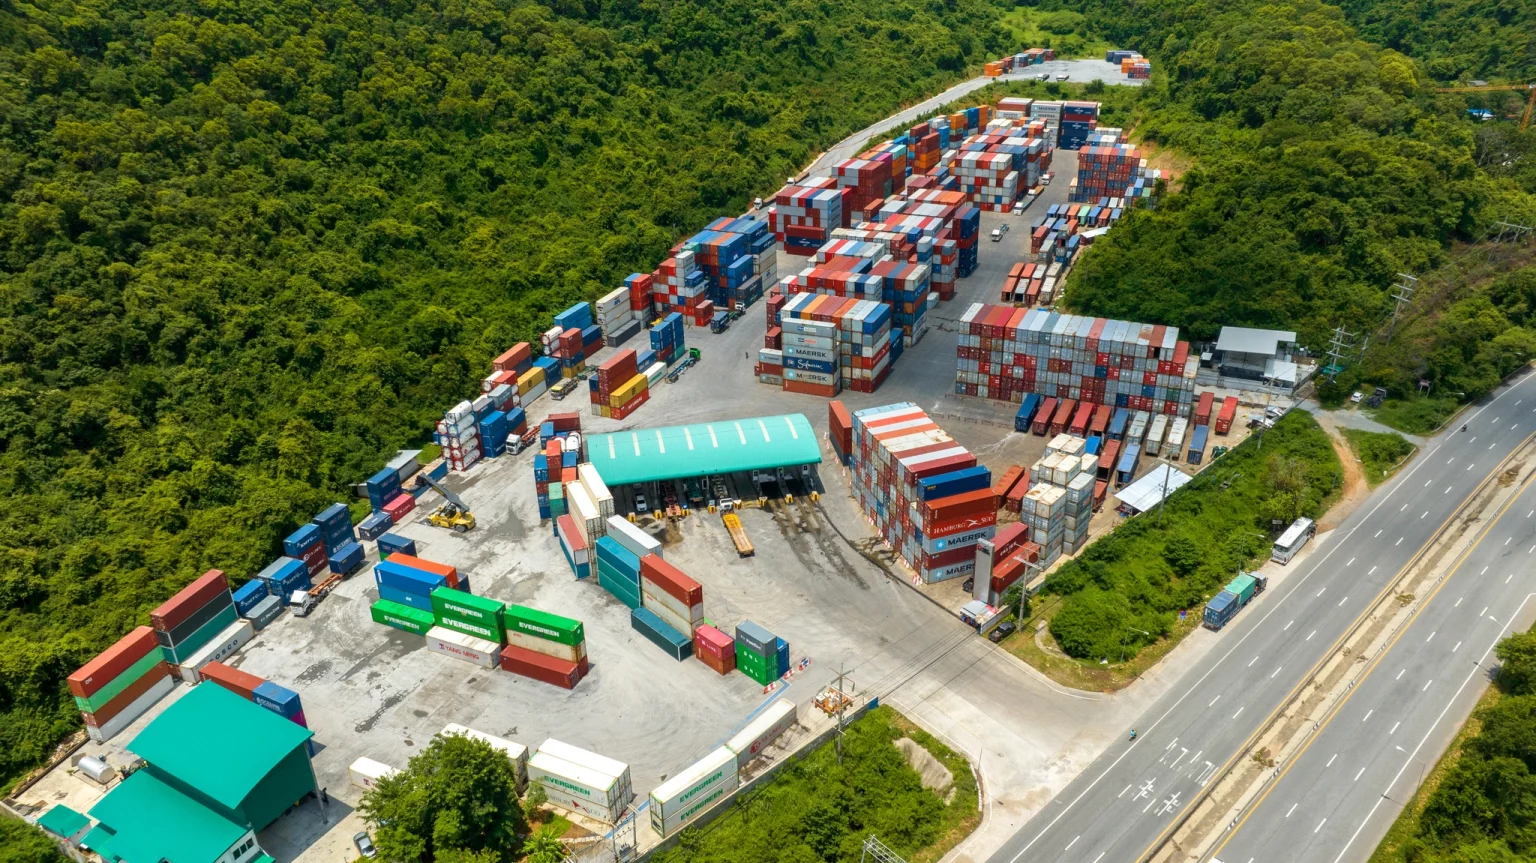 Vue aérienne d'un chantier naval avec des rangées de conteneurs colorés au port maritime, illustrant les services de logistique et de transport maritime.